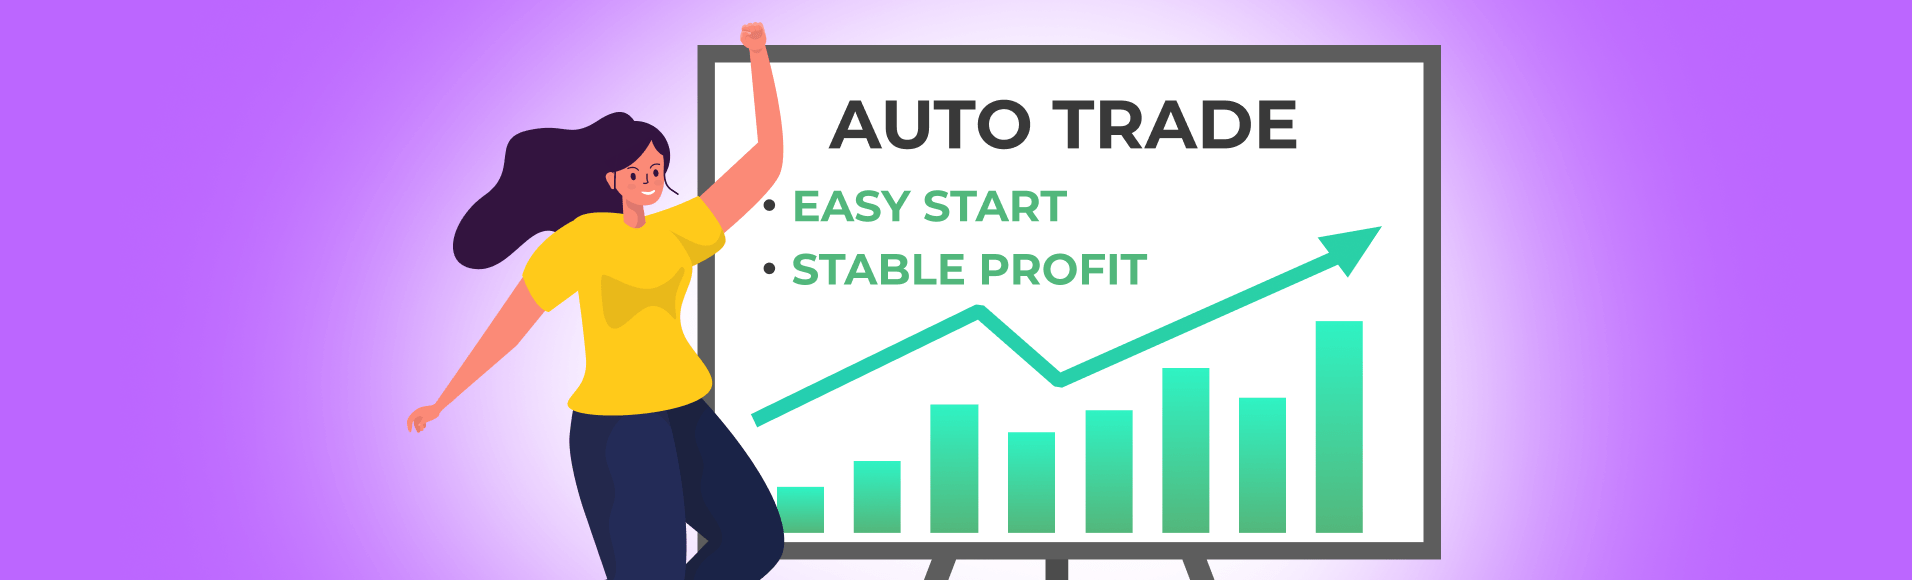 Perdagangan automatik: permulaan yang mudah, keuntungan yang stabil.